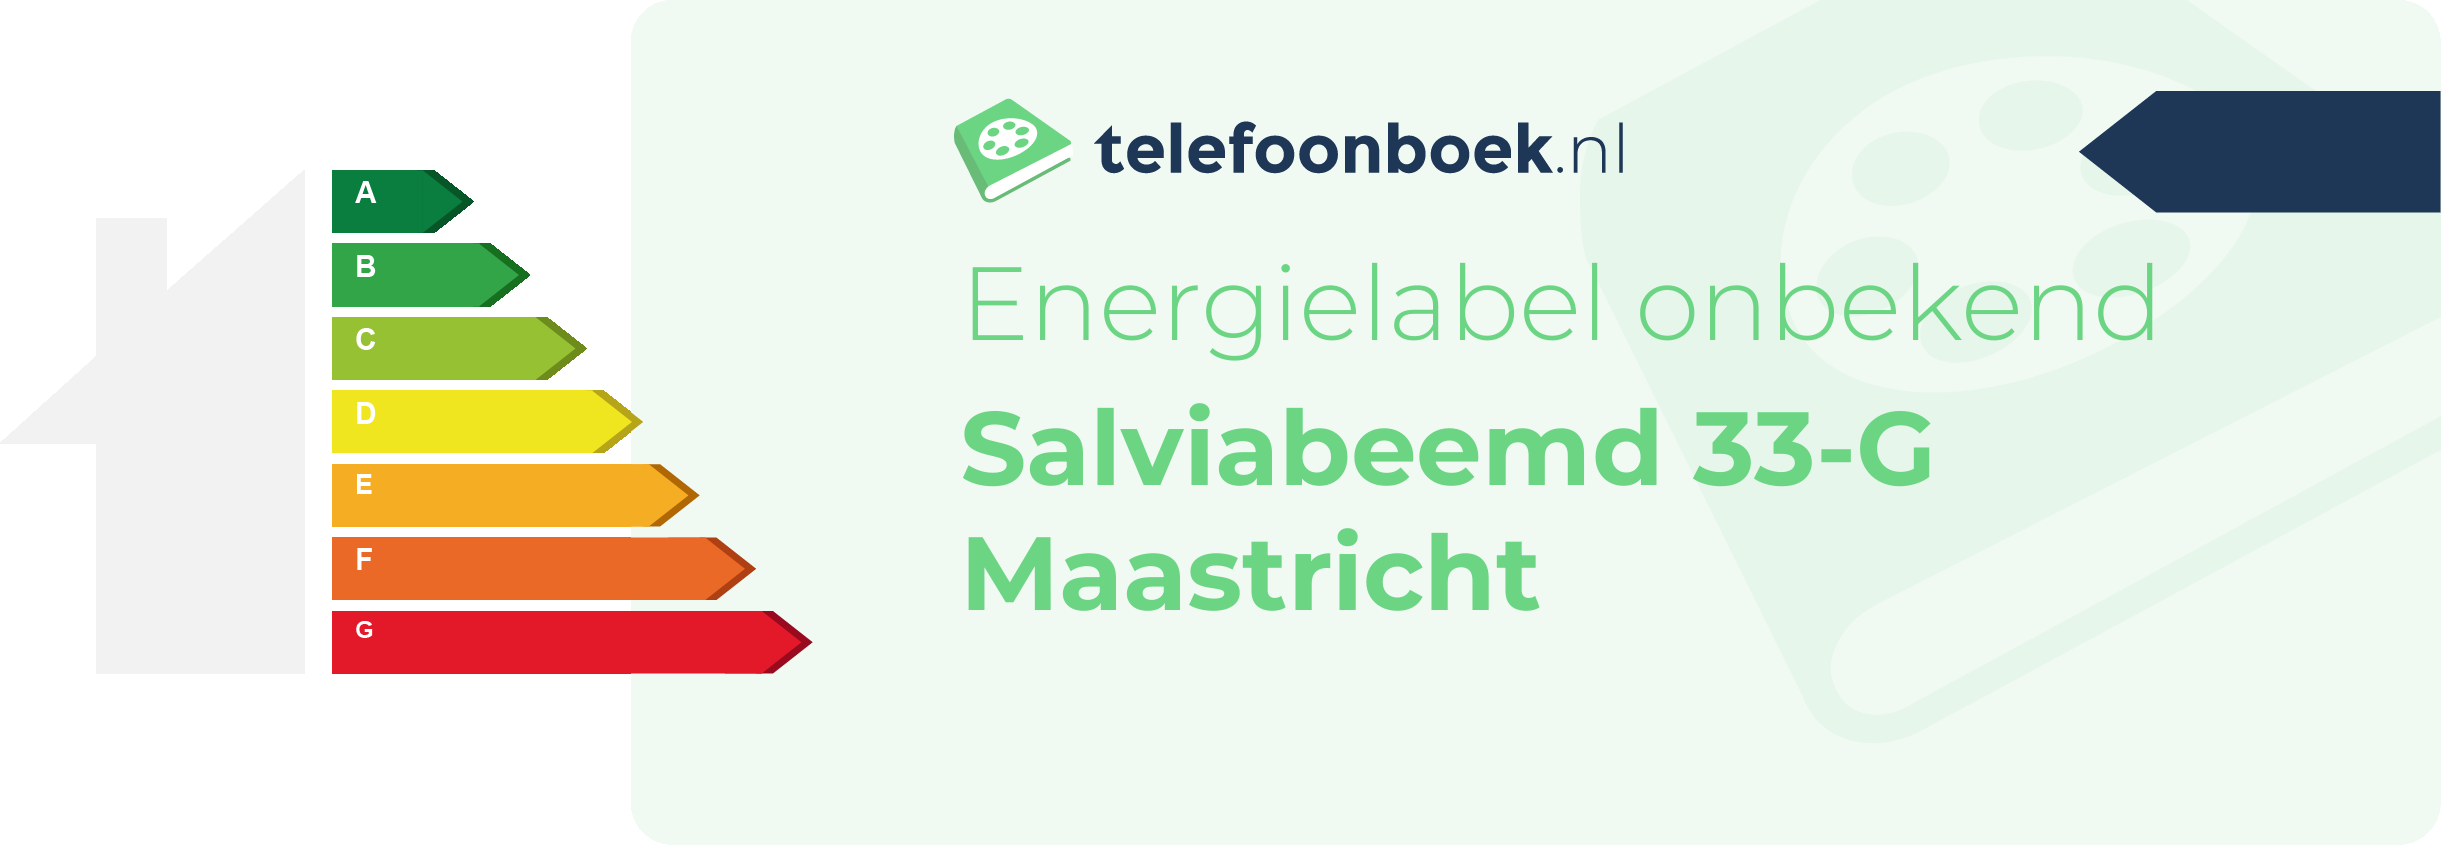 Energielabel Salviabeemd 33-G Maastricht